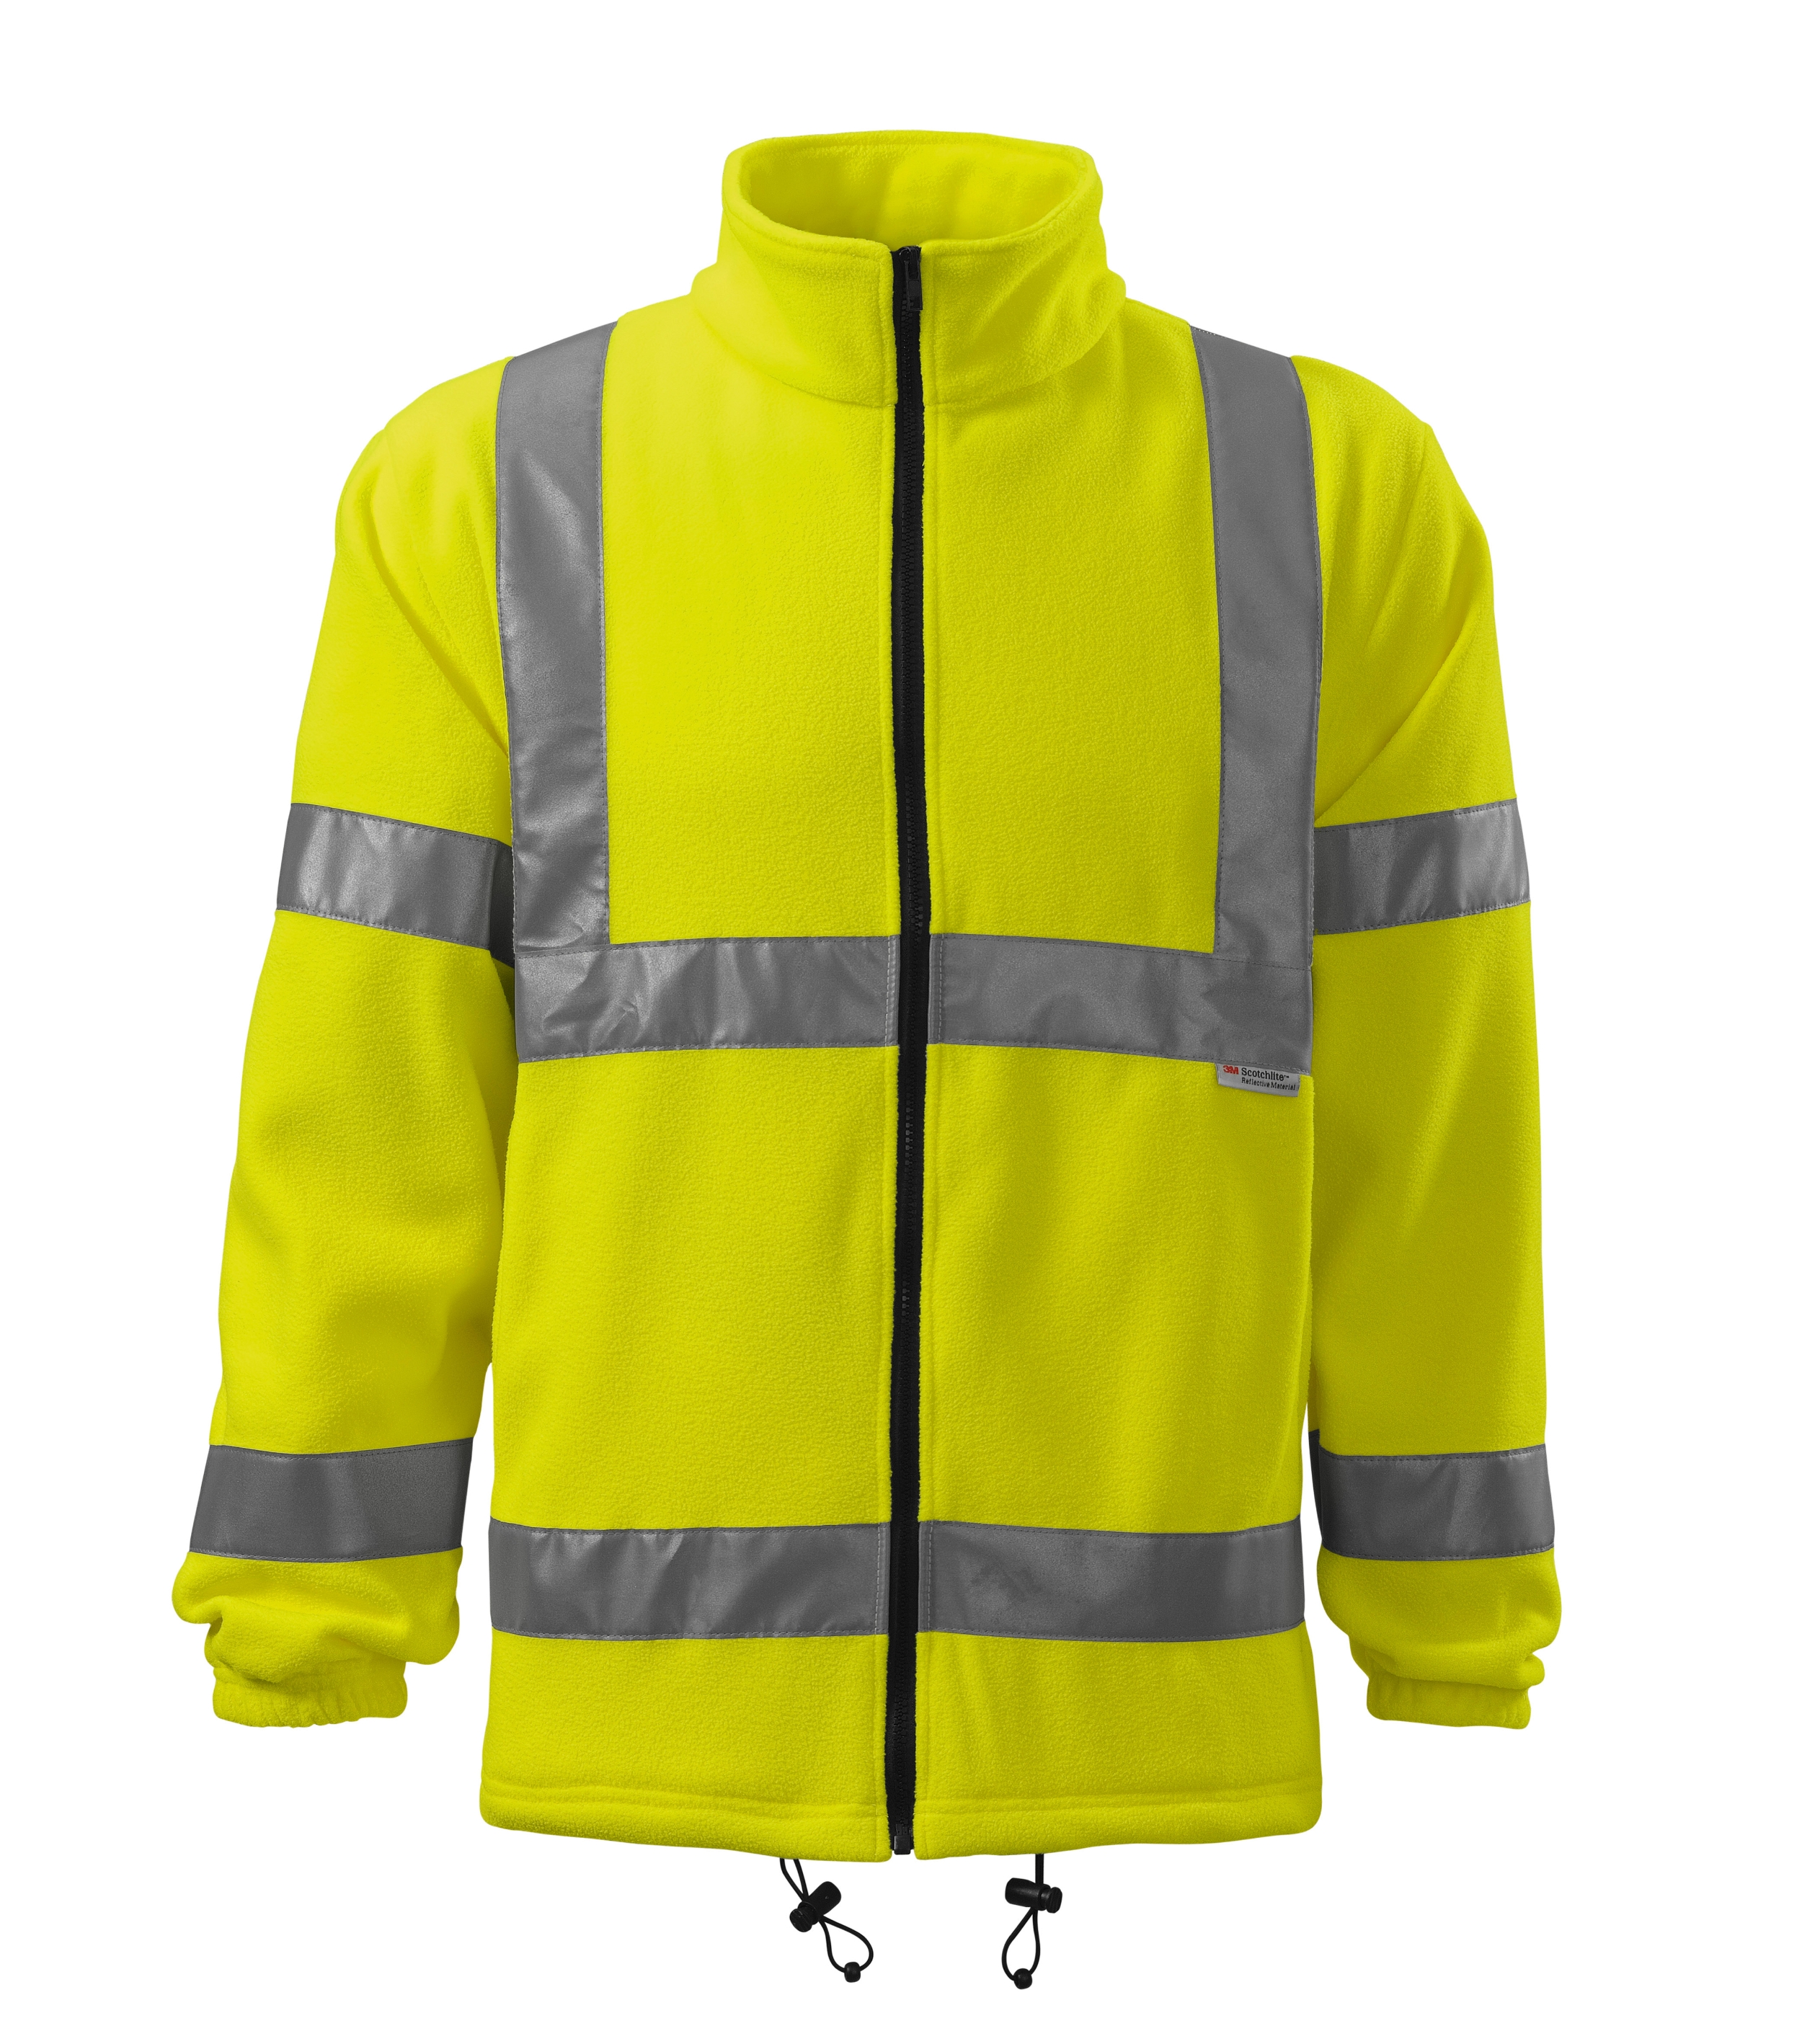 Herren / Damen Warnschutzjacke in gelb oder orange - HV FLEECE JACKET5V1 - hochsichtbar und Leistentaschen mit Krampenreißvershluss - warnschutz  Arbeitsjacke für Damen und Herren 